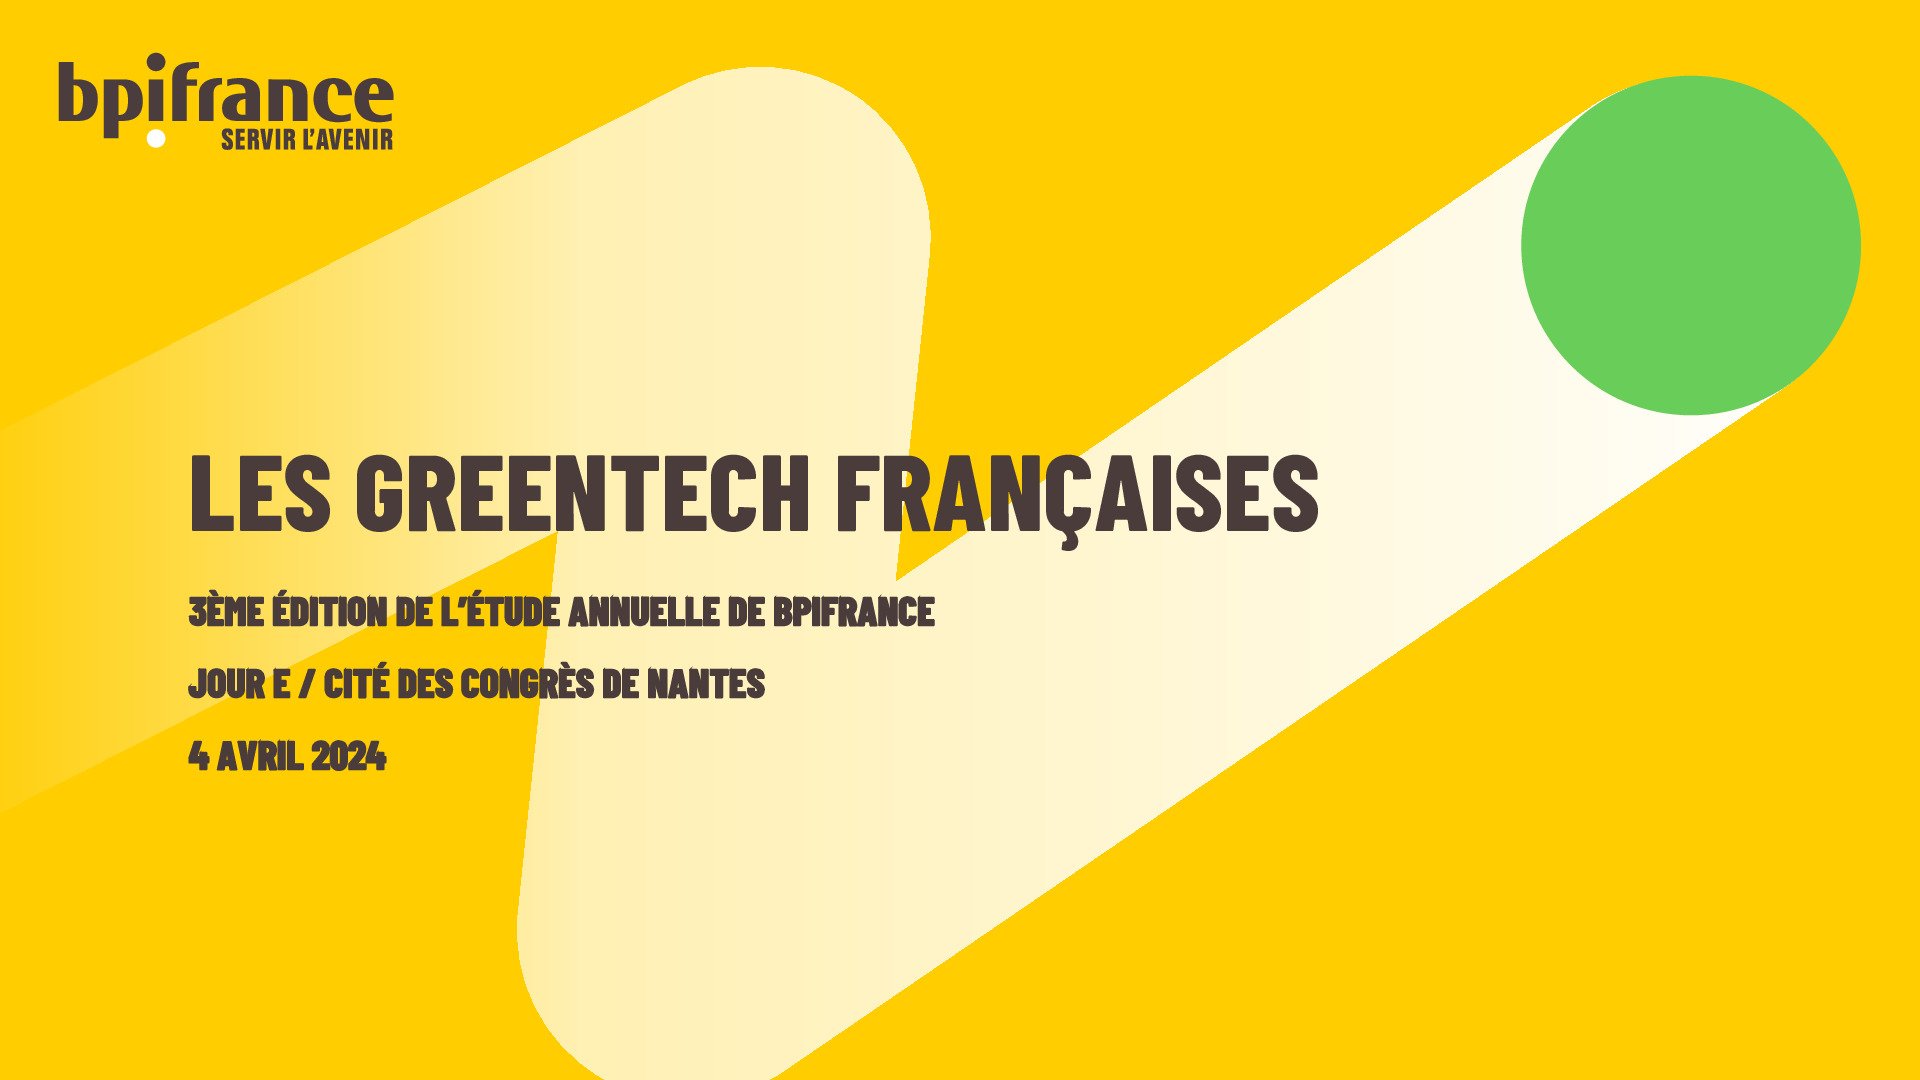 Etude Bpifrance – Les Greentech françaises – 3ème édition annuelle, 2024-pdf